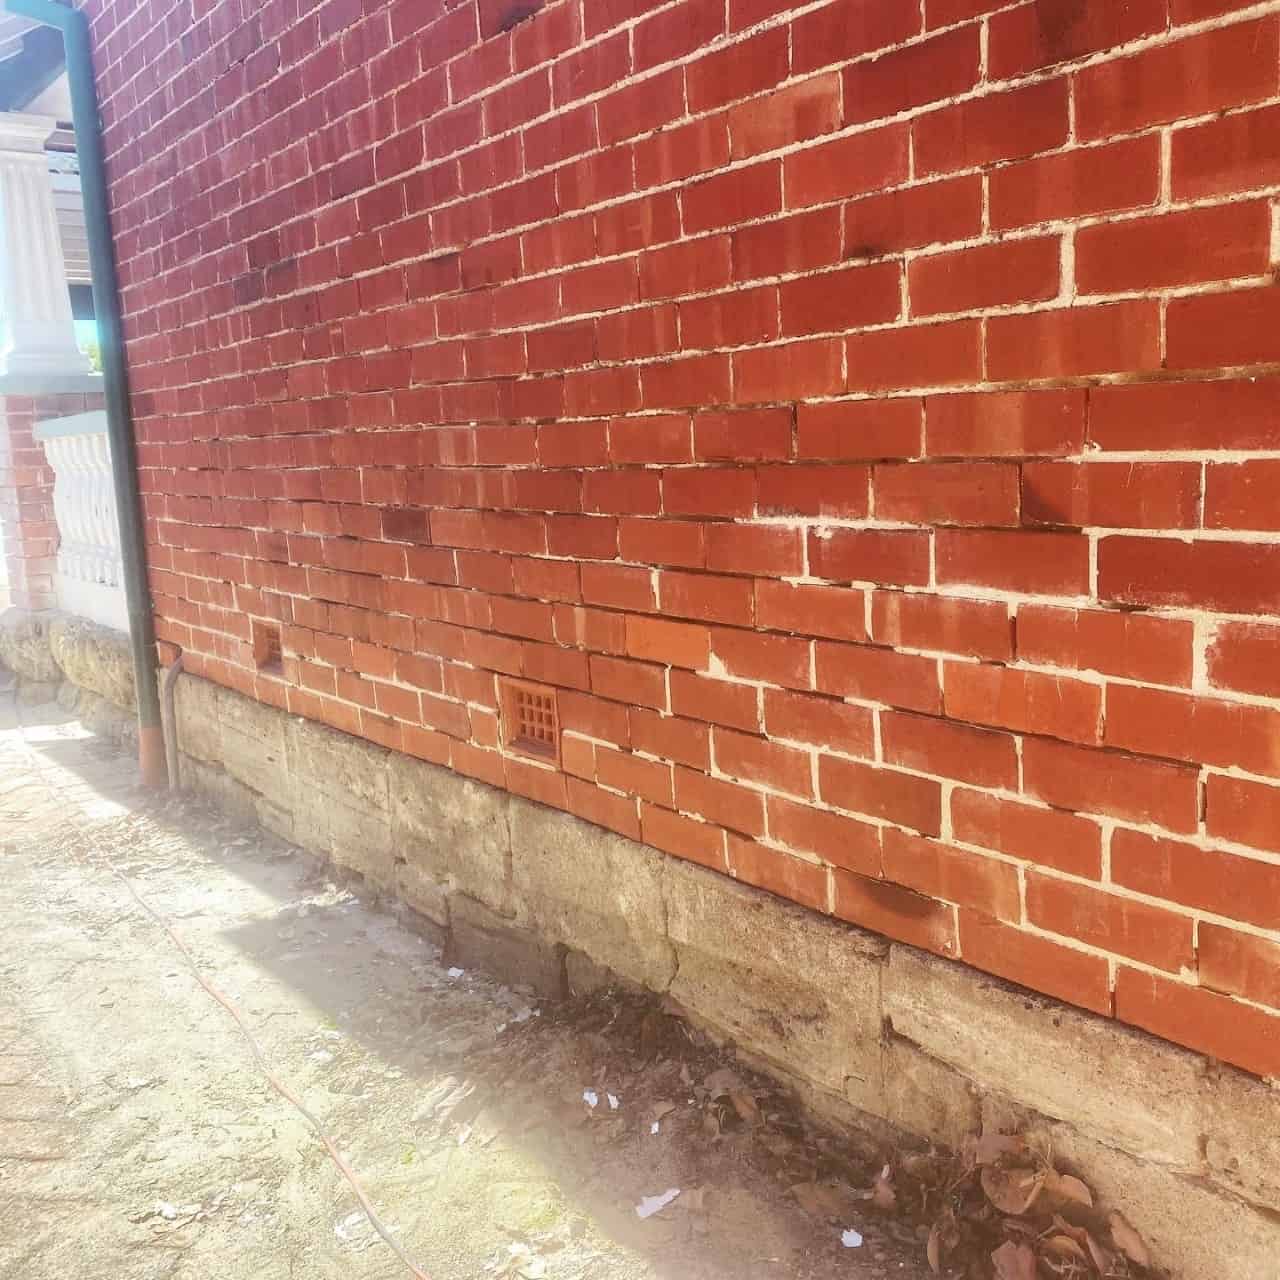 Brick Wall with crumbling mortar